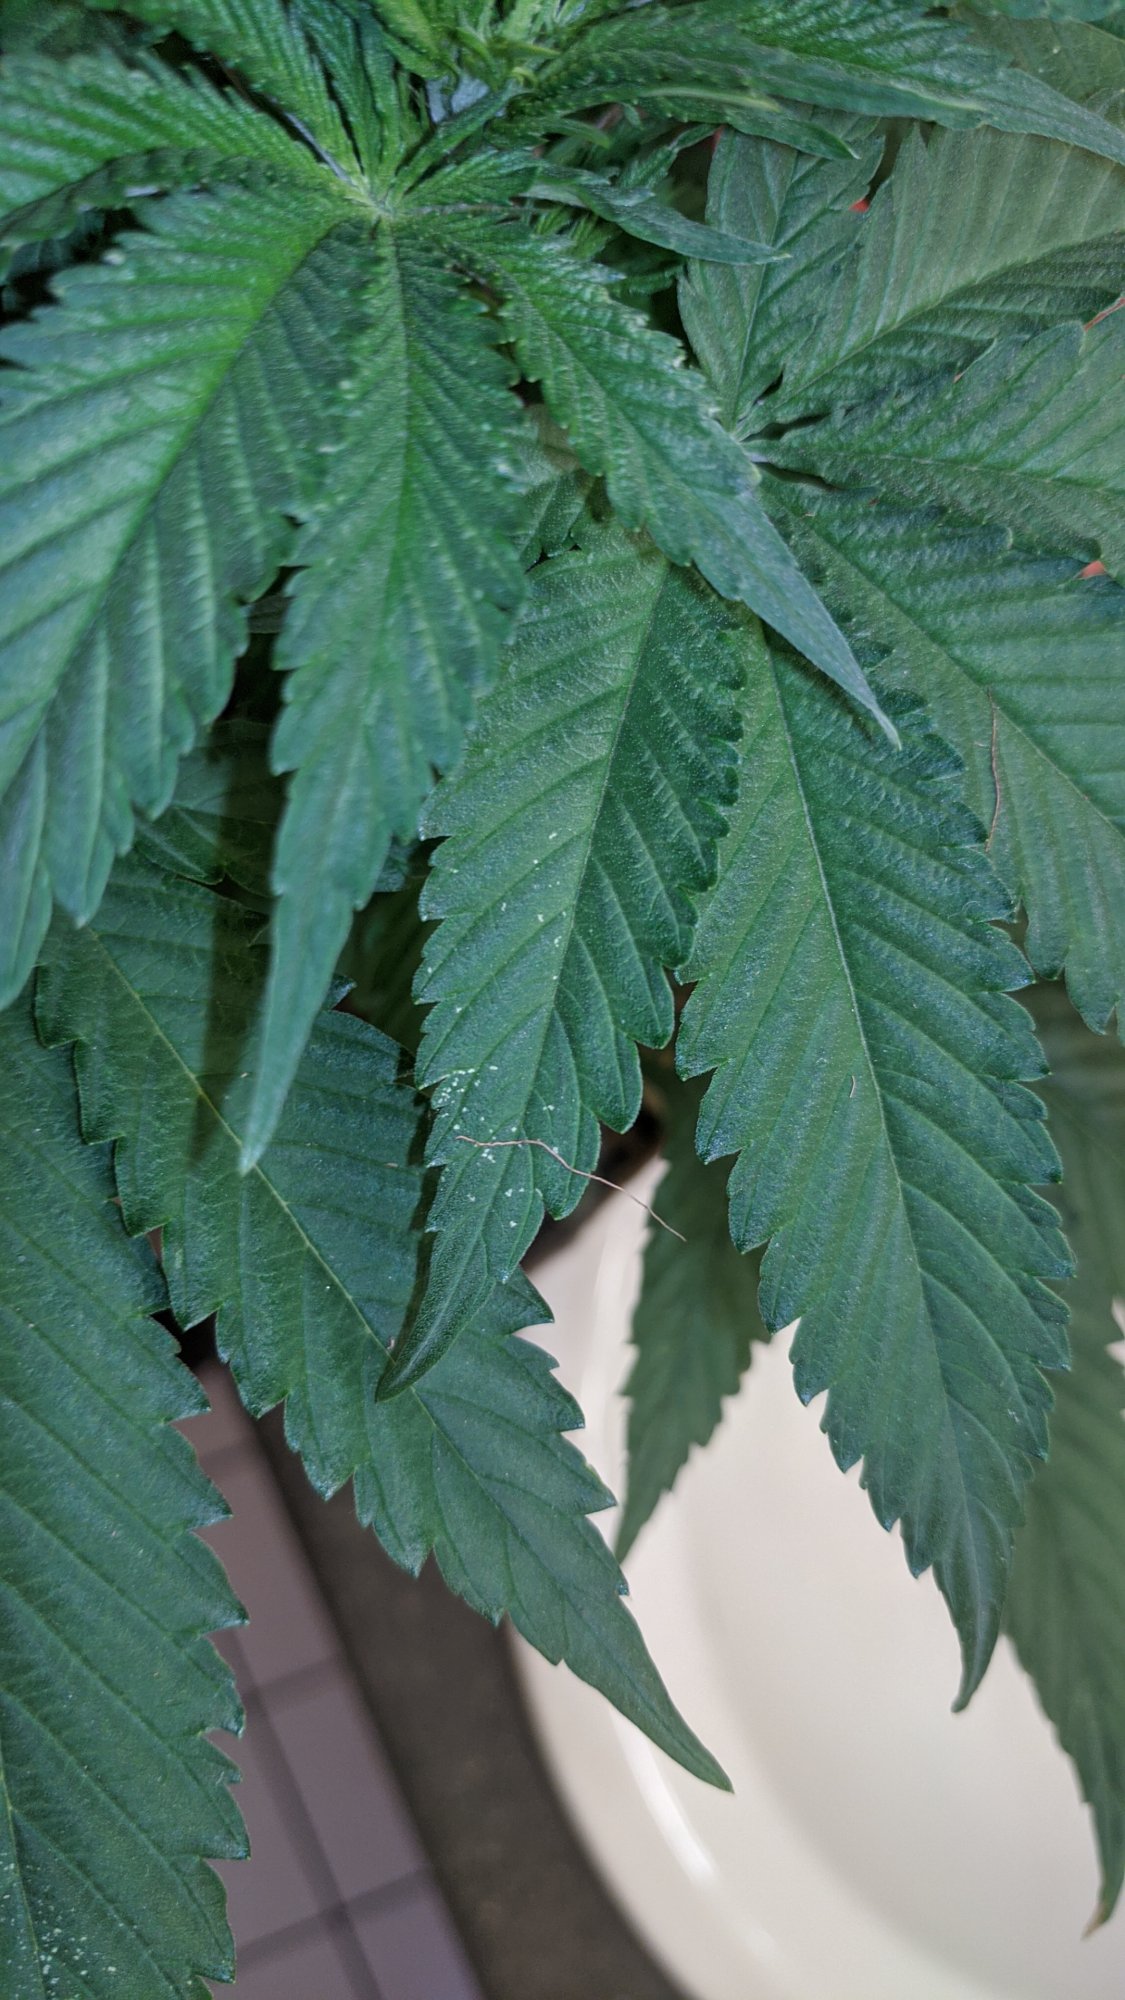 Leaf spots please help diagnose 2